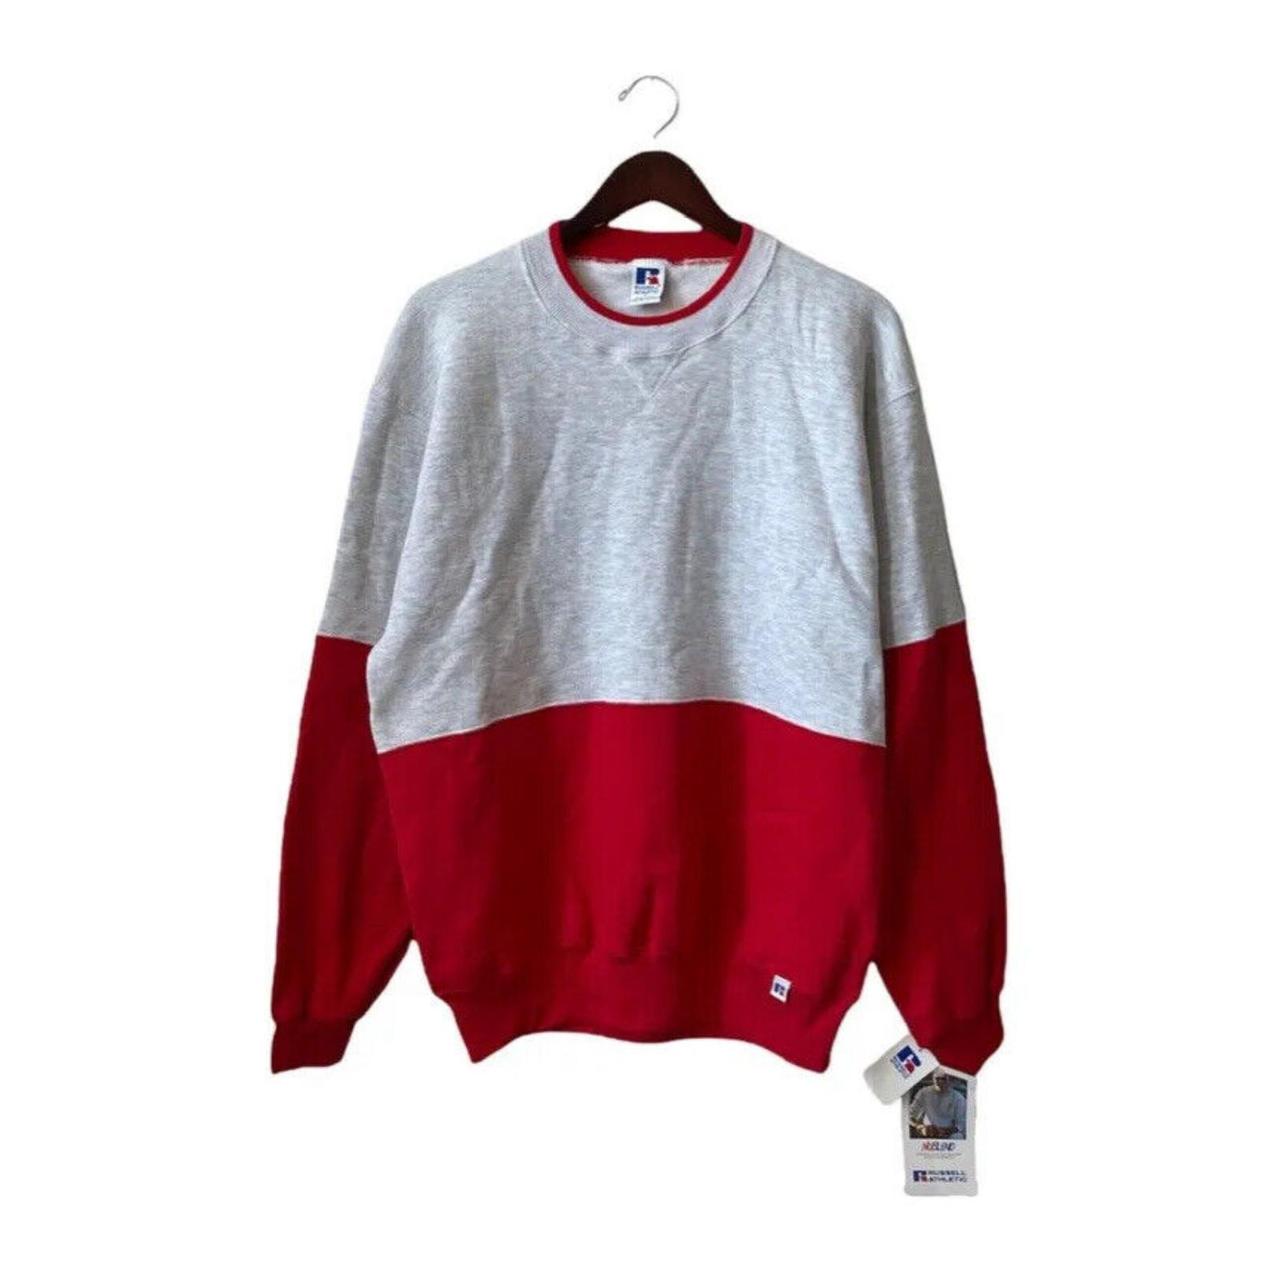 Men's Sweatshirt - Red - L